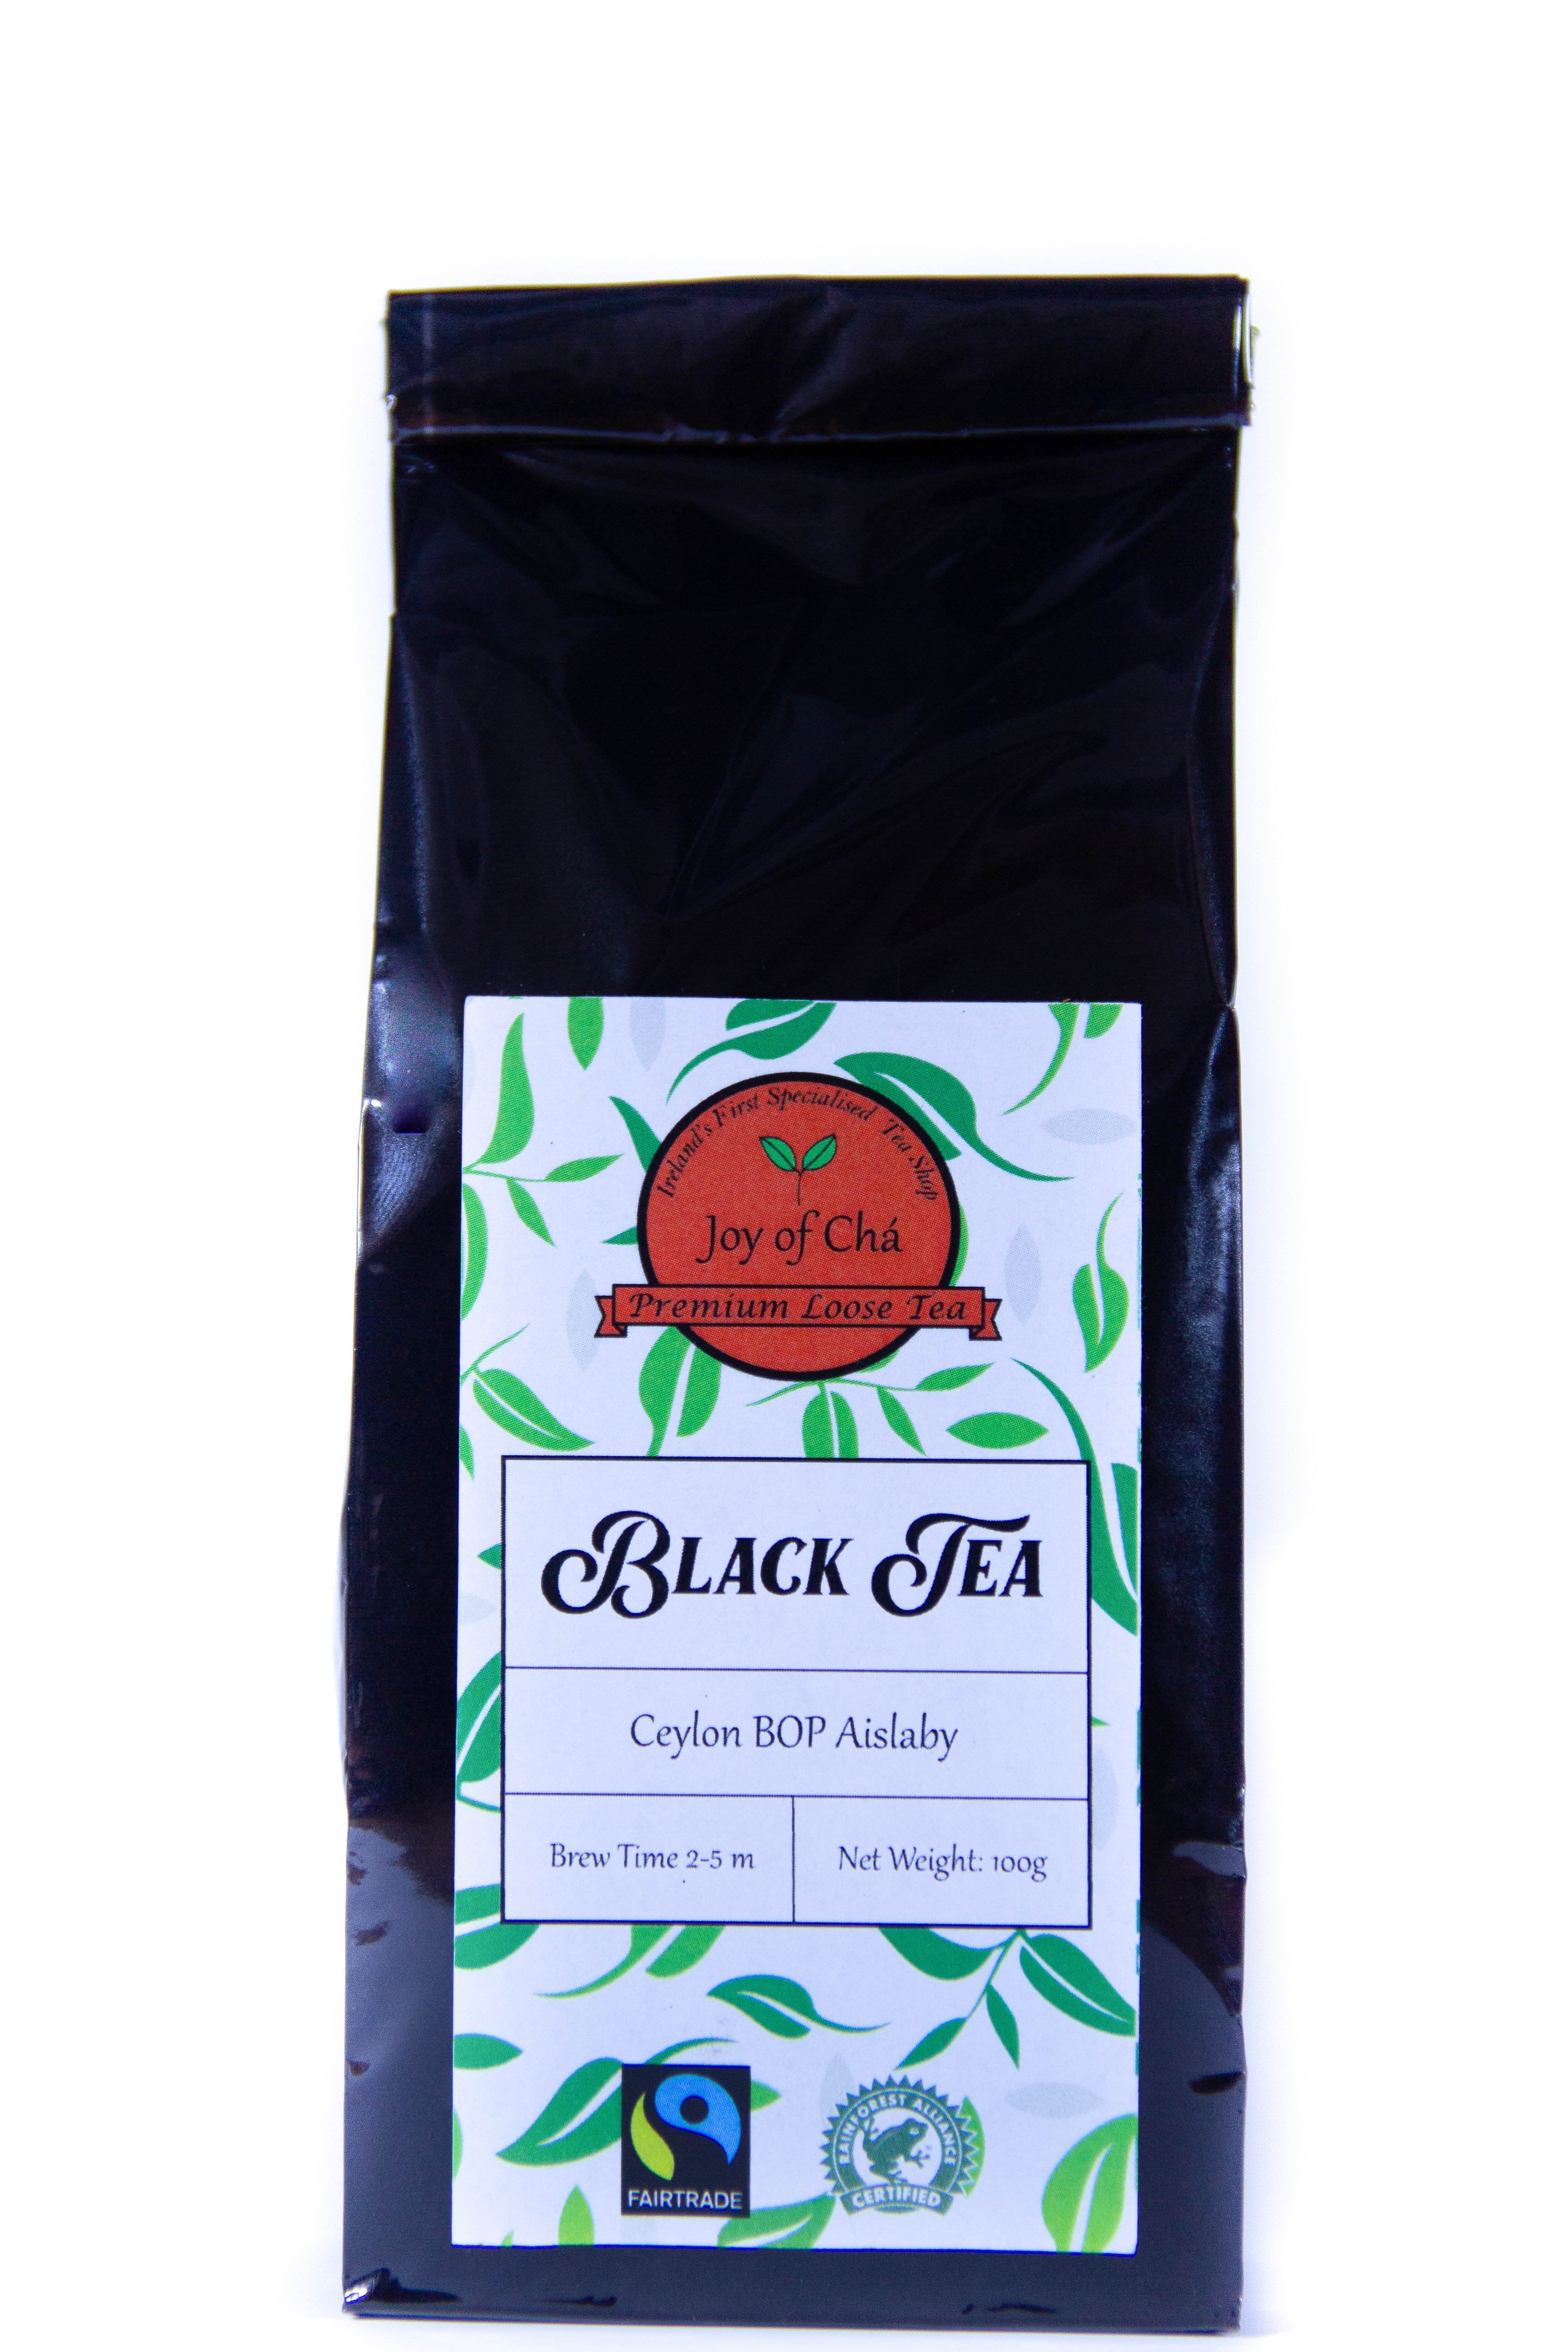 Ceylon BOP Aislaby Black Tea